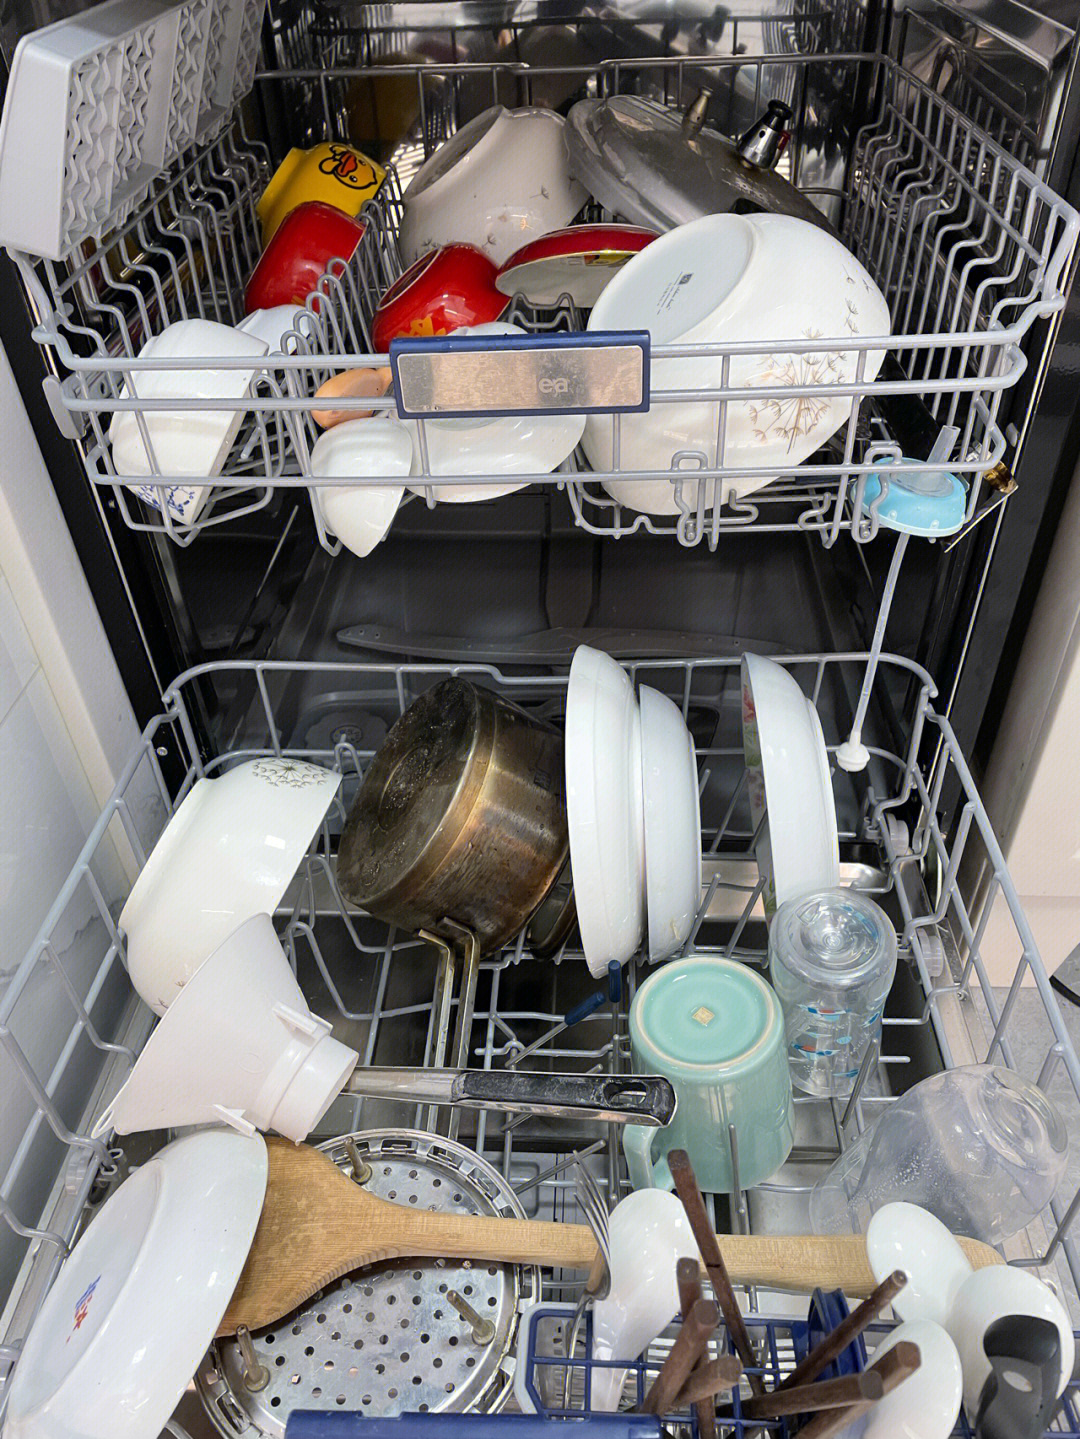 洗碗机不能清洗一次性塑料容器，这可能会损坏其他餐具